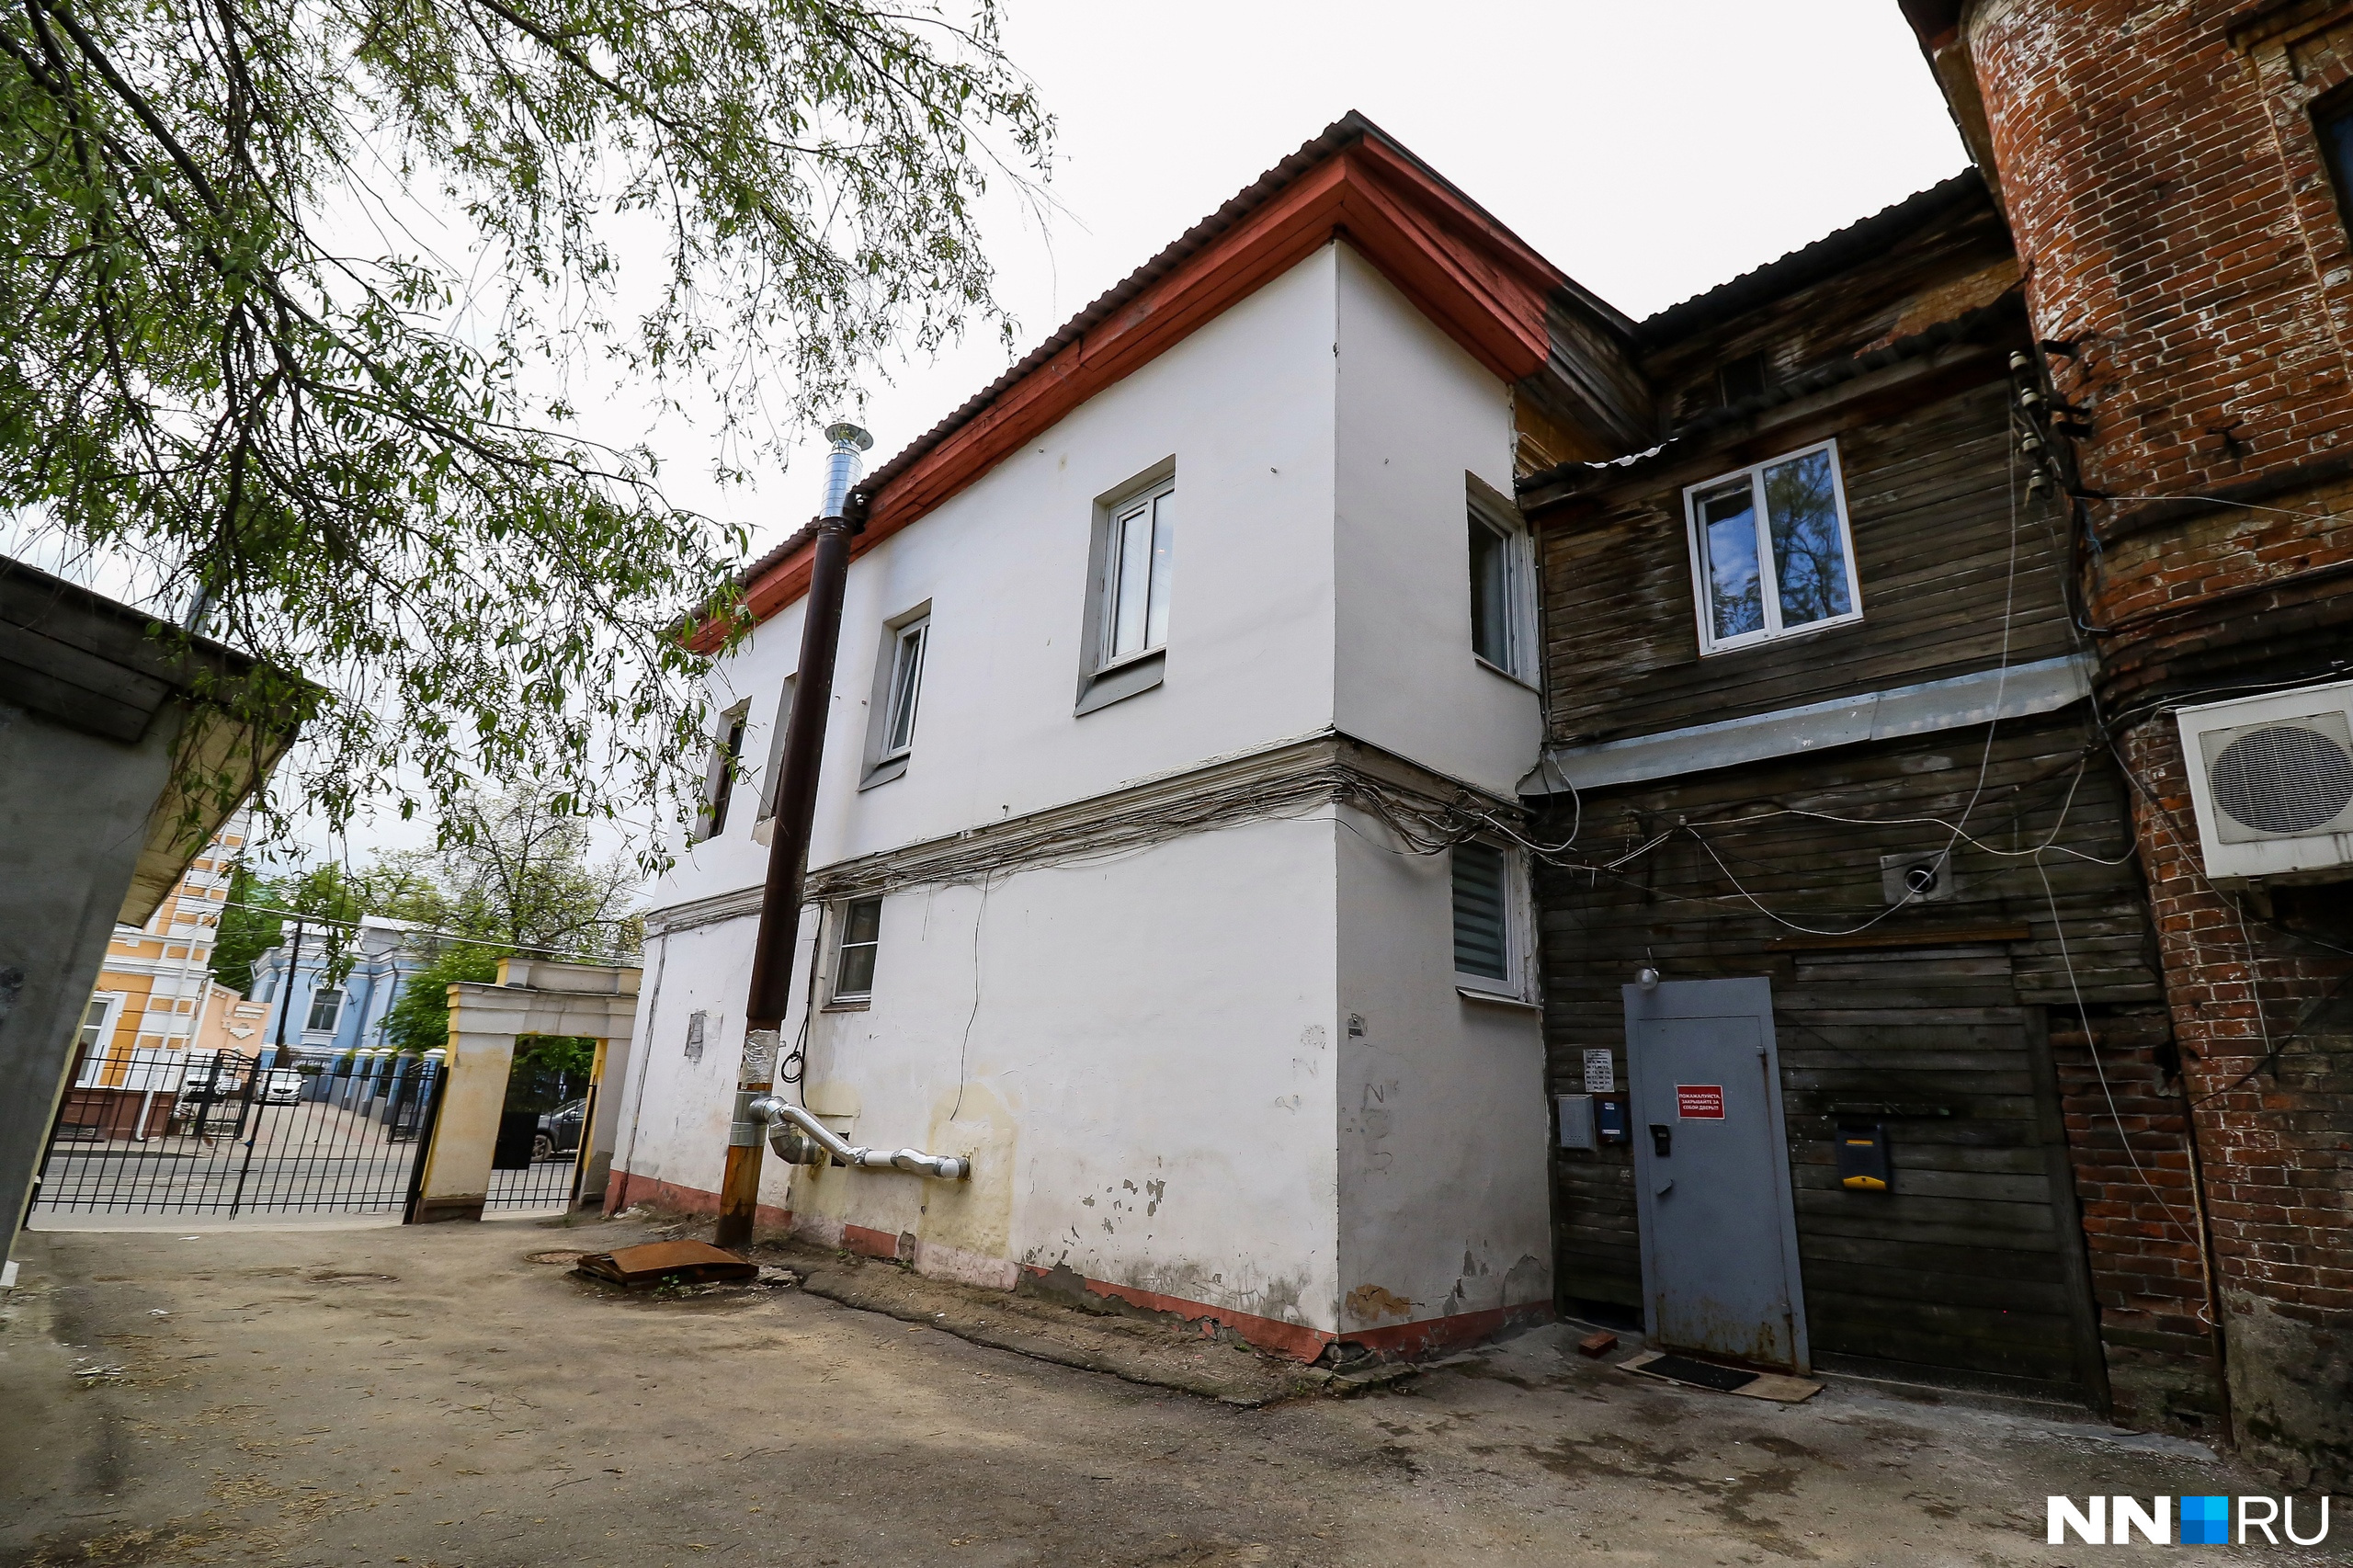 Дом, в котором теперь живет Алексей